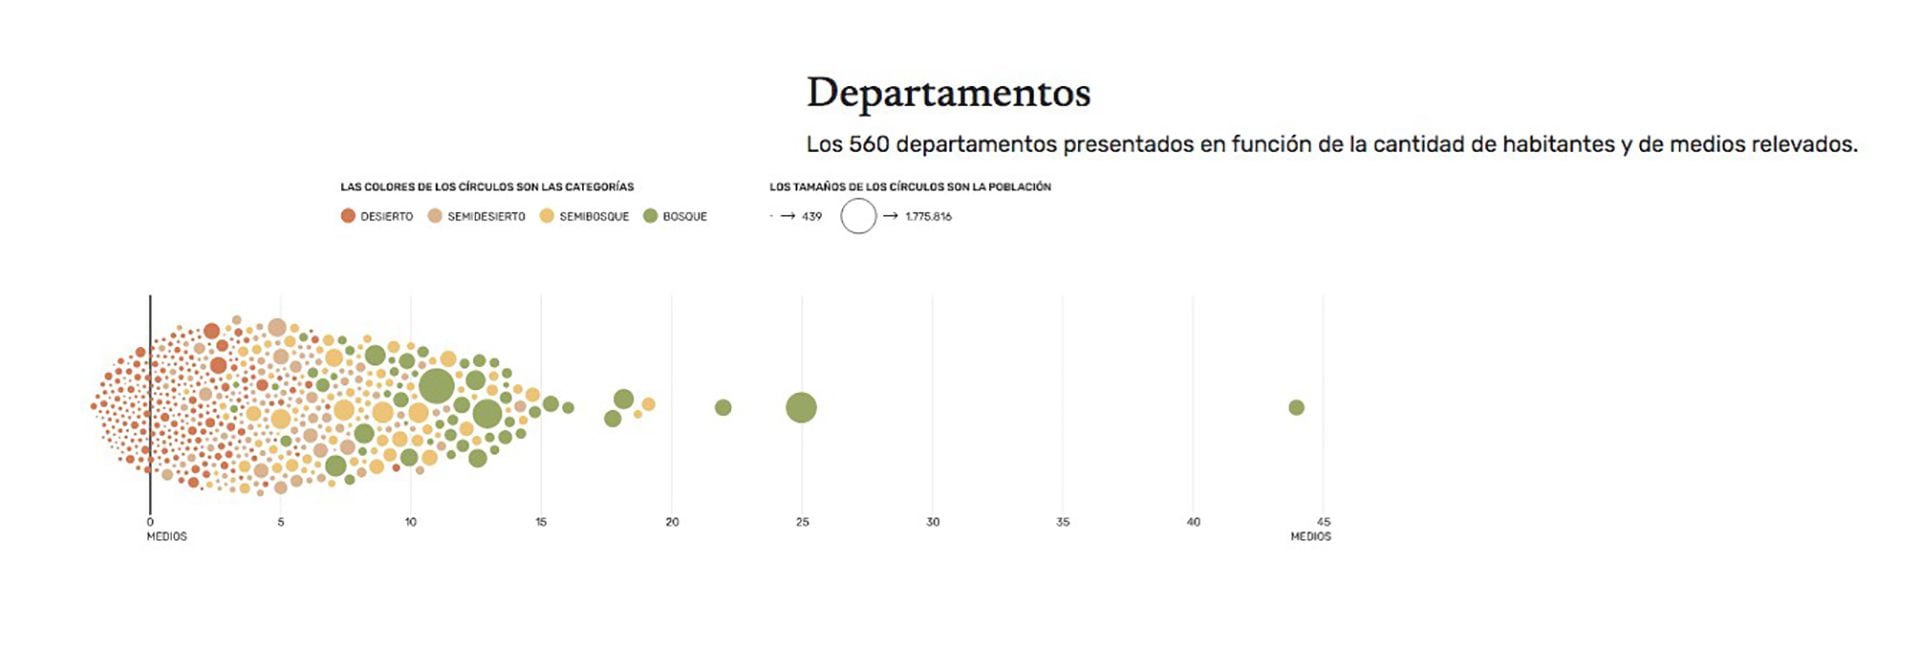 El gráfico muestra las distintas categorías sobre la situación del periodismo local en los 560 departamento del país relevados.